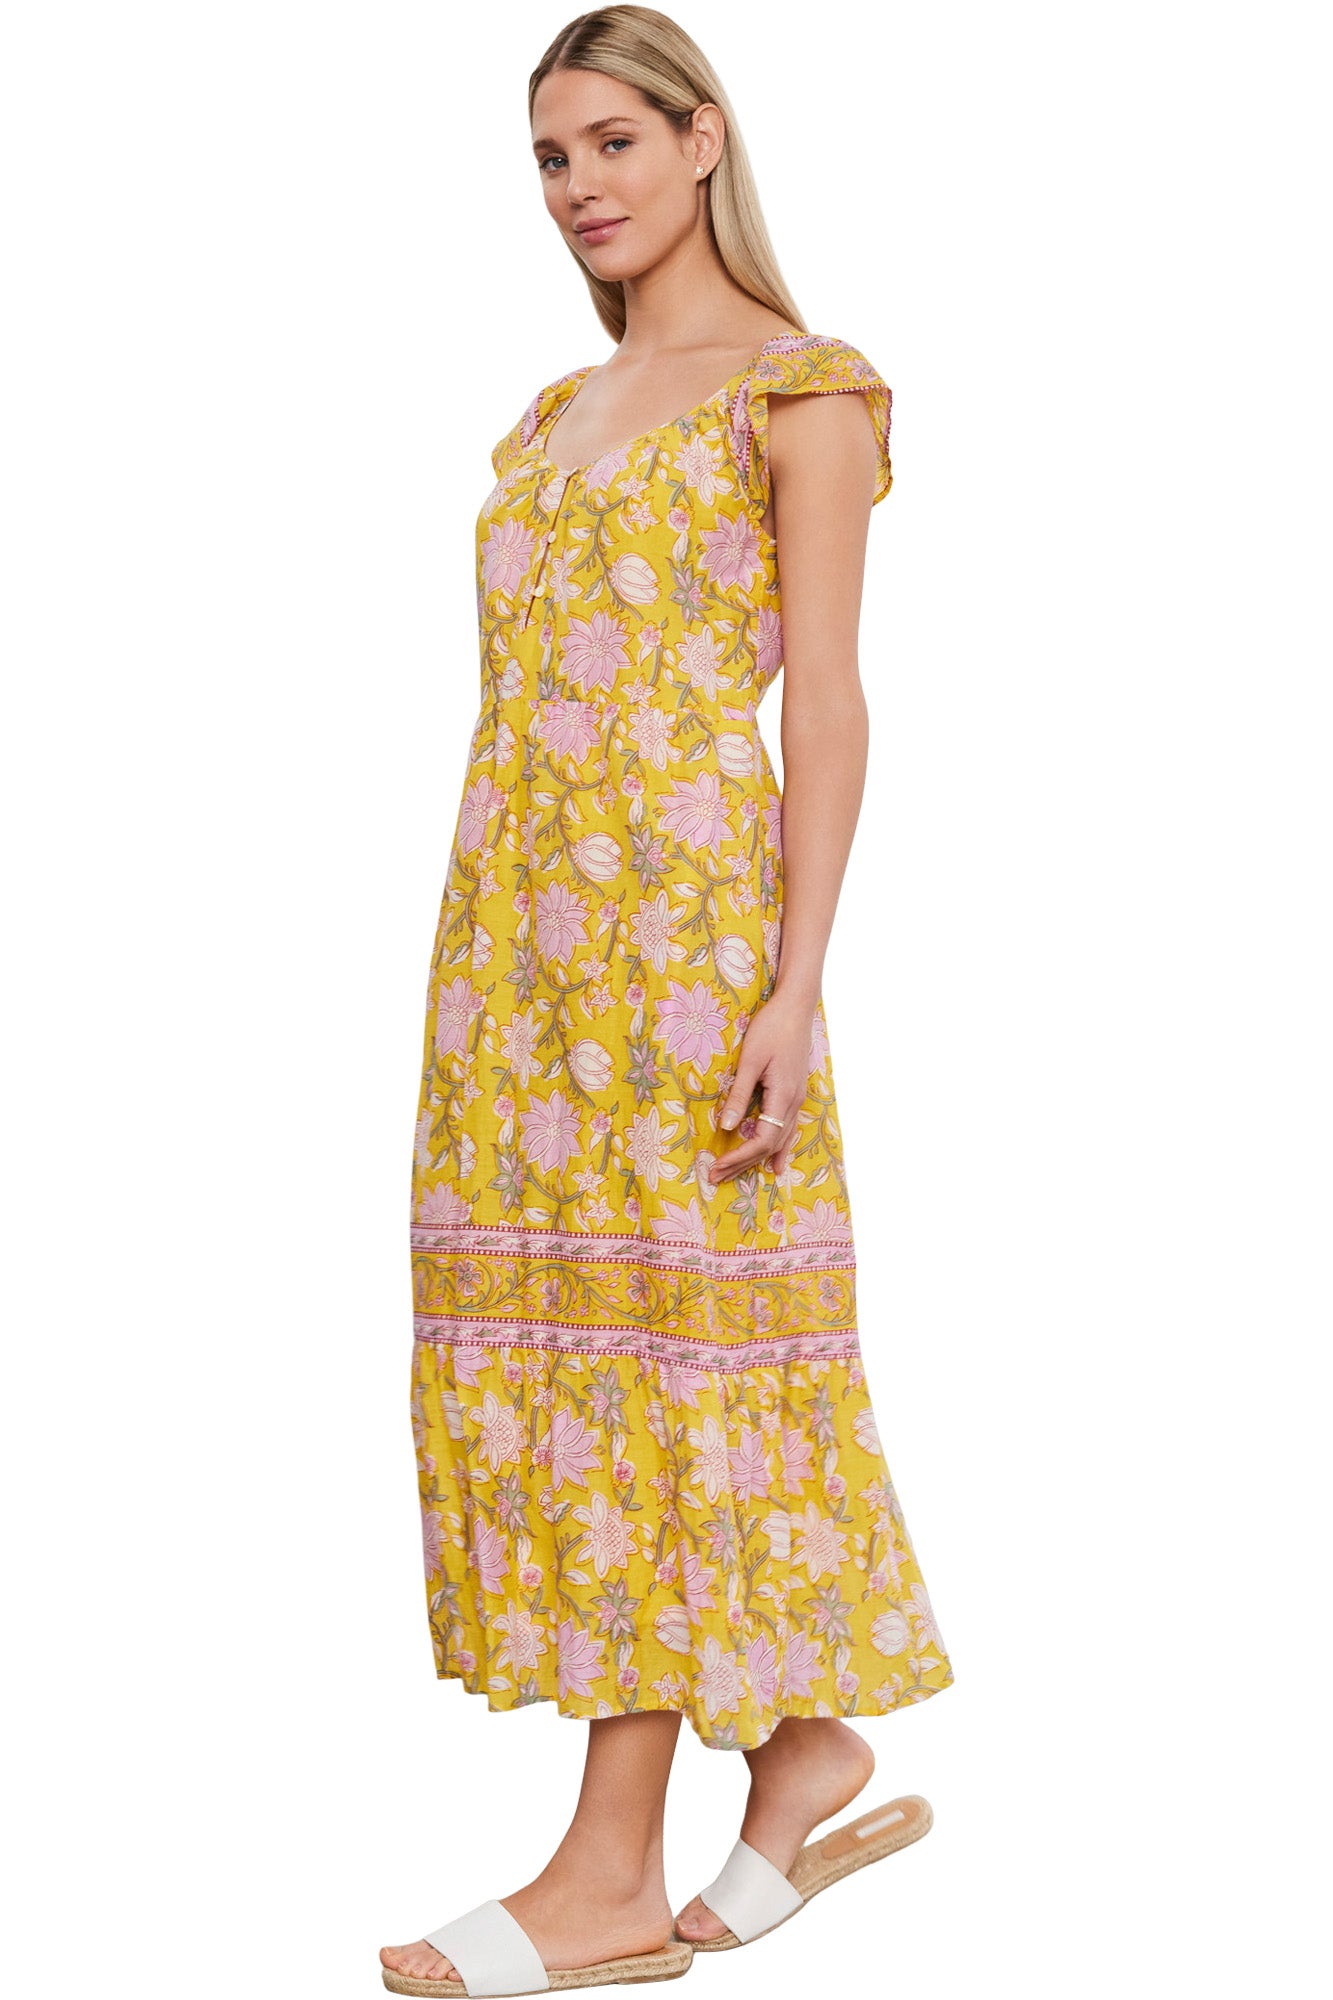 Velvet Jazlyn Sleeveless Dress in Sunburst